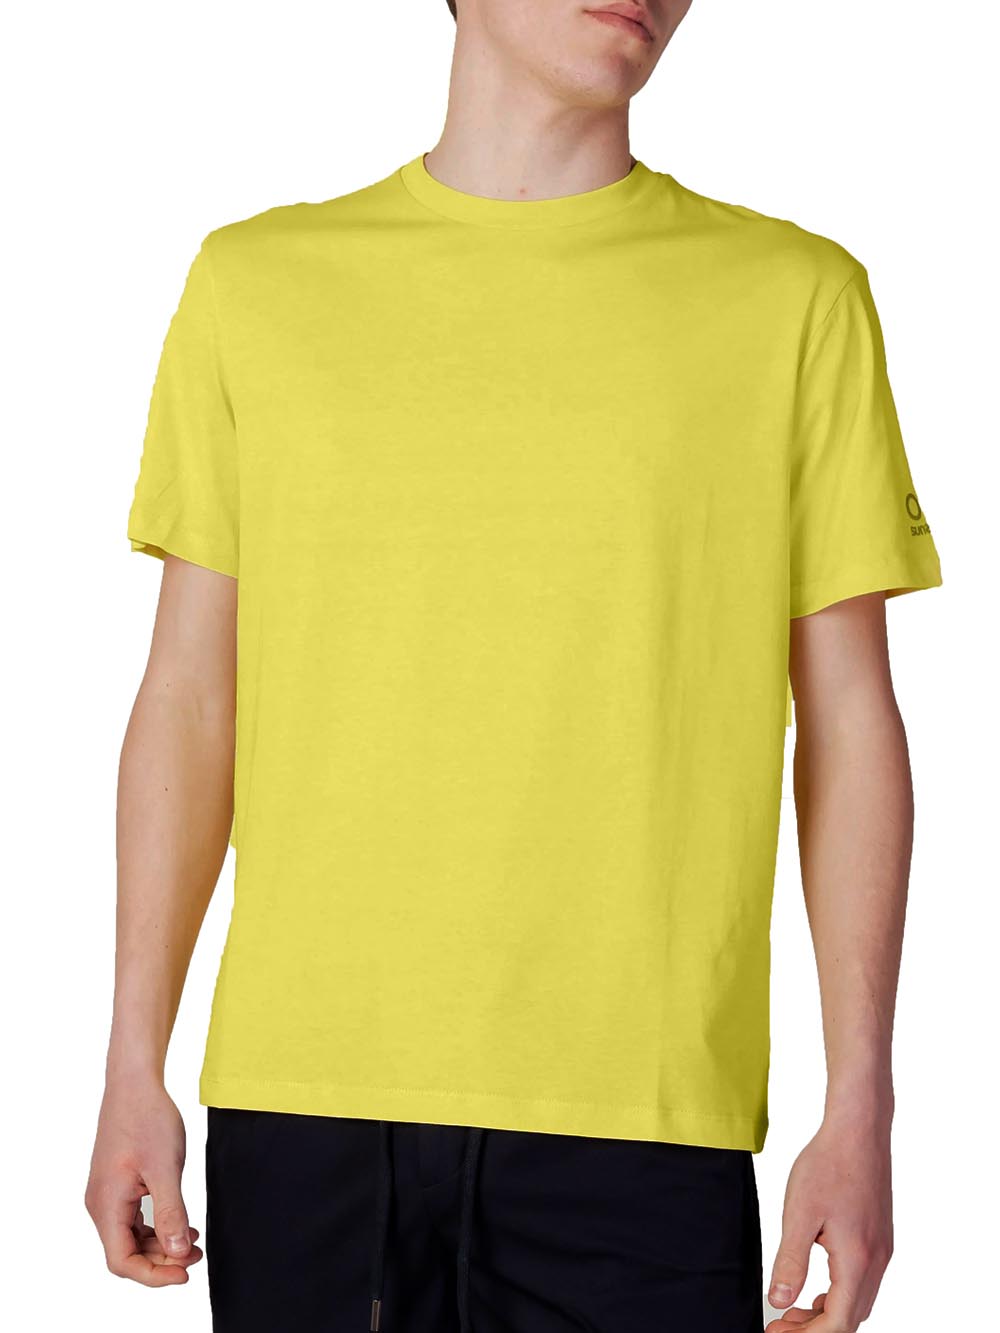 Suns T-shirt Uomo Giallo